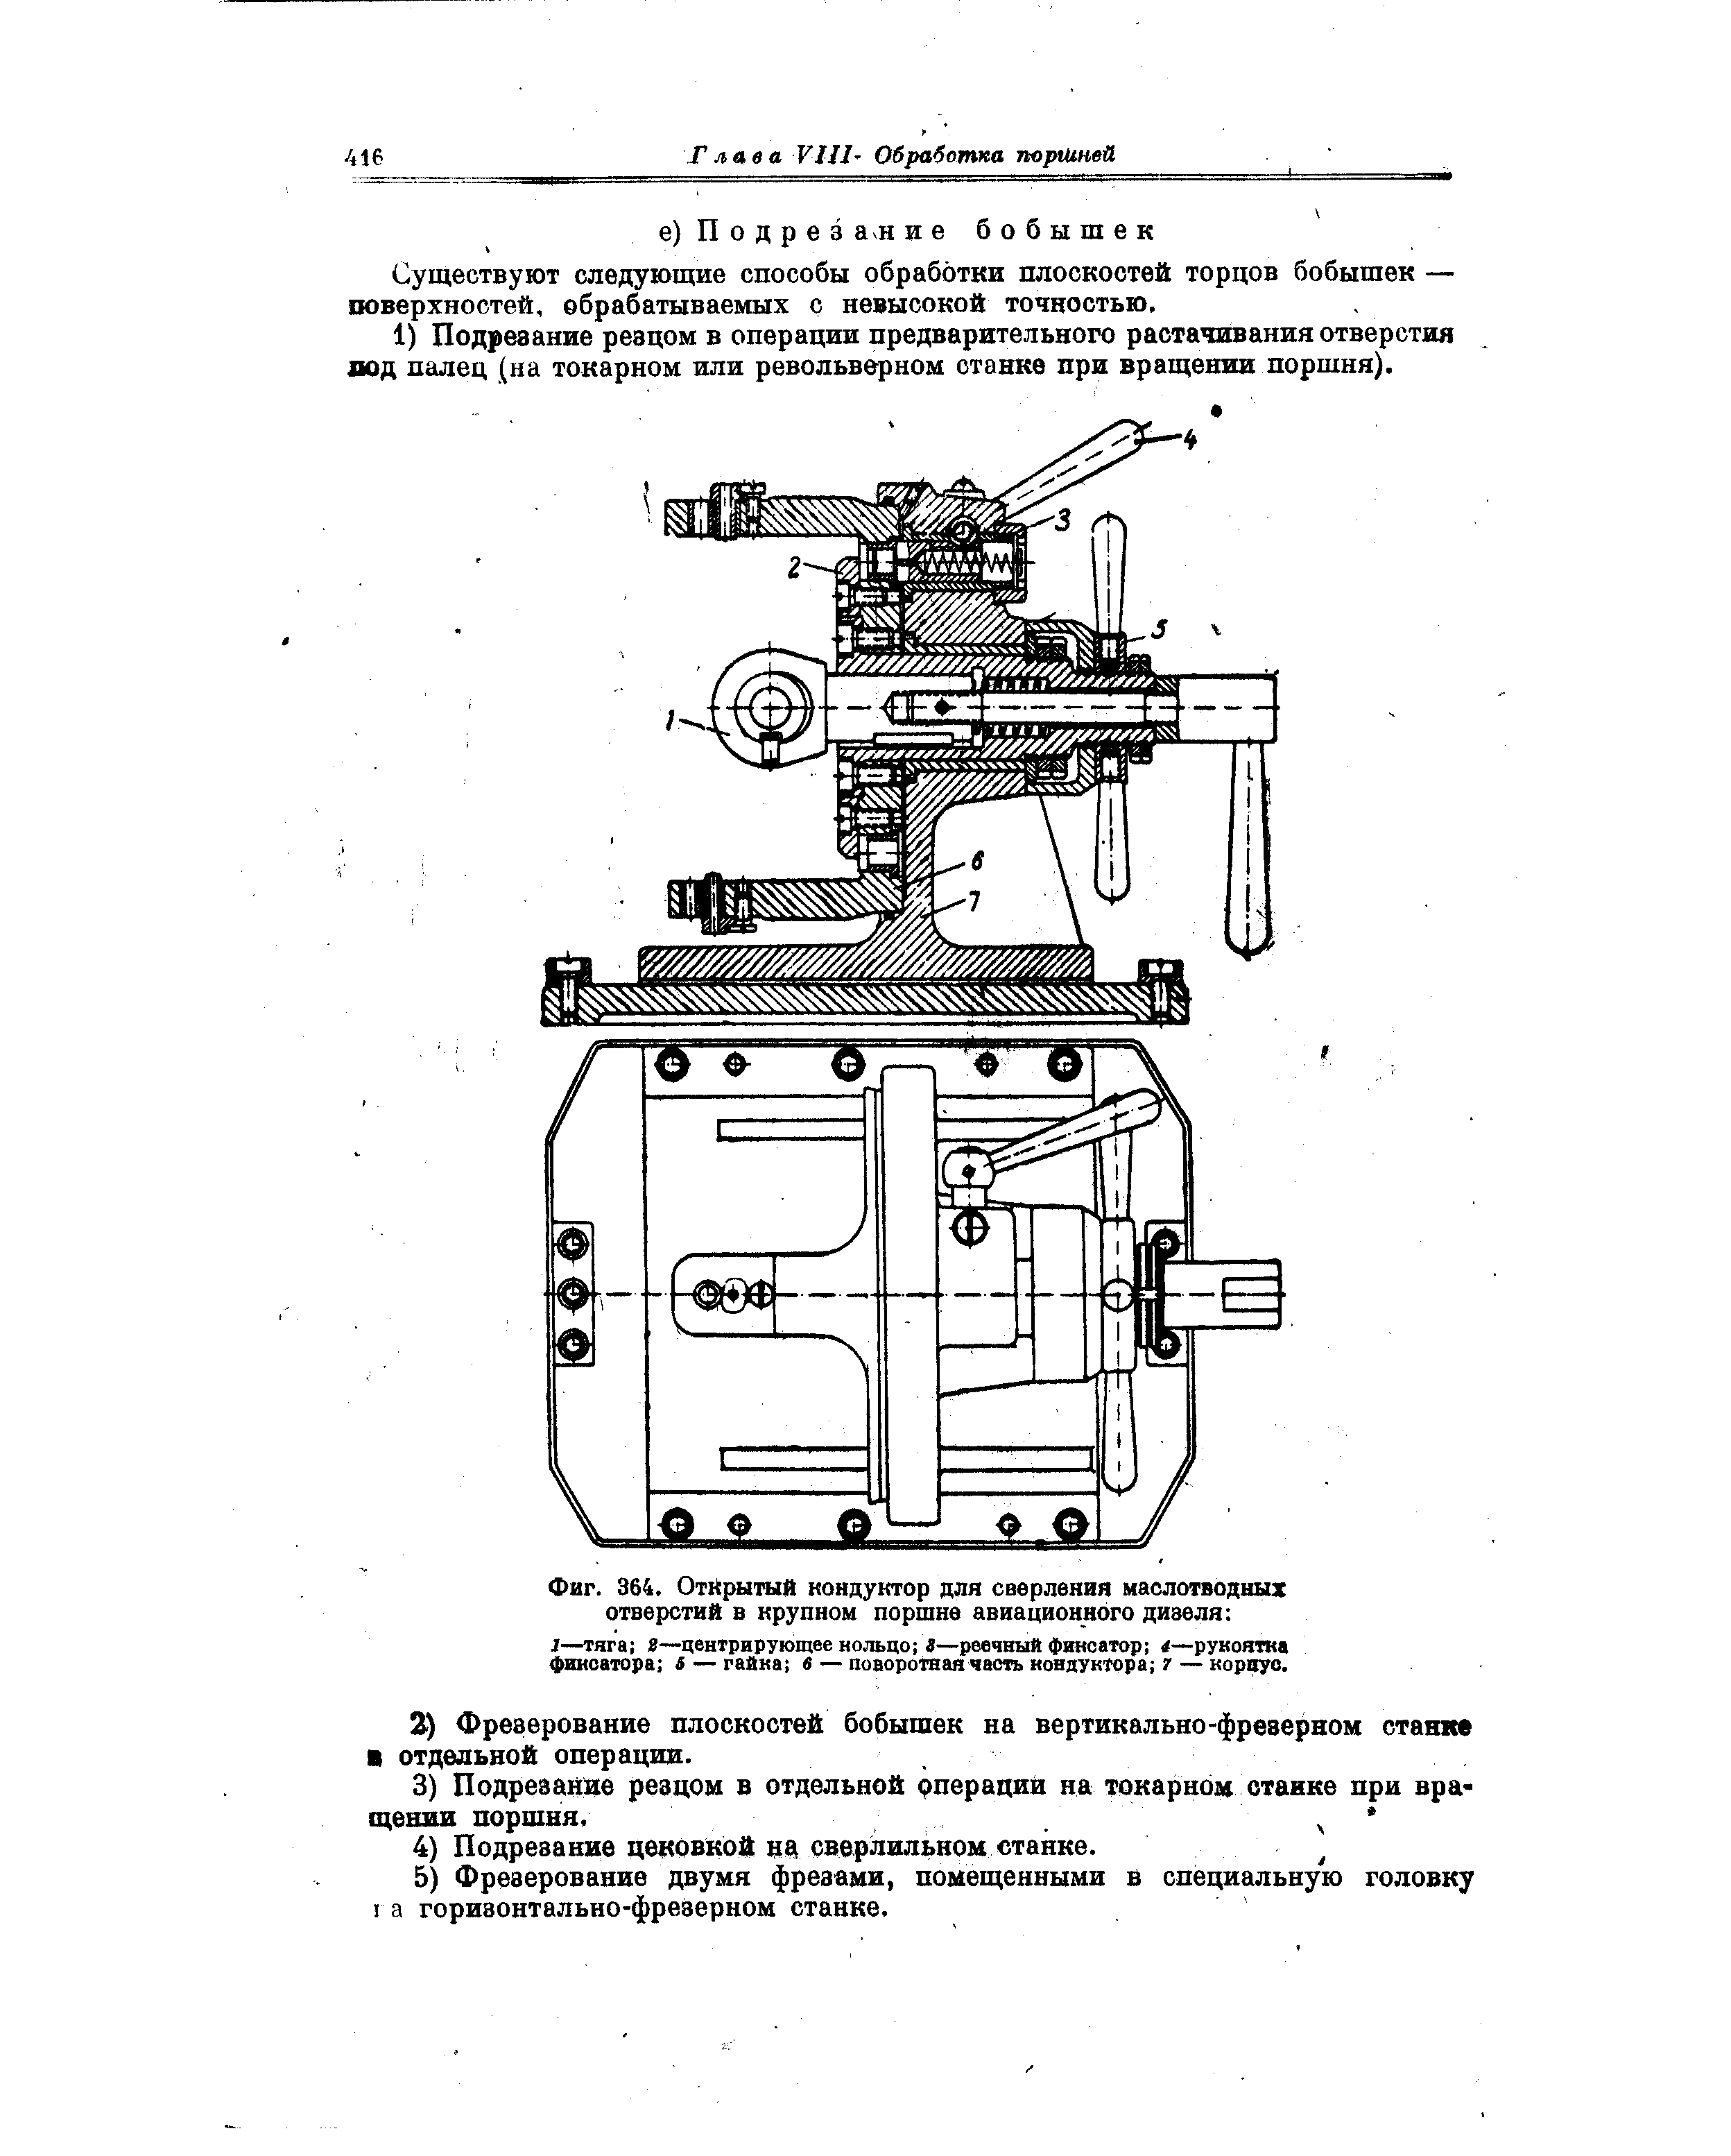 Фиг. 364, Открытый кондуктор для сверления маслотводных отверстий в крупном поршне авиационного дизеля 
